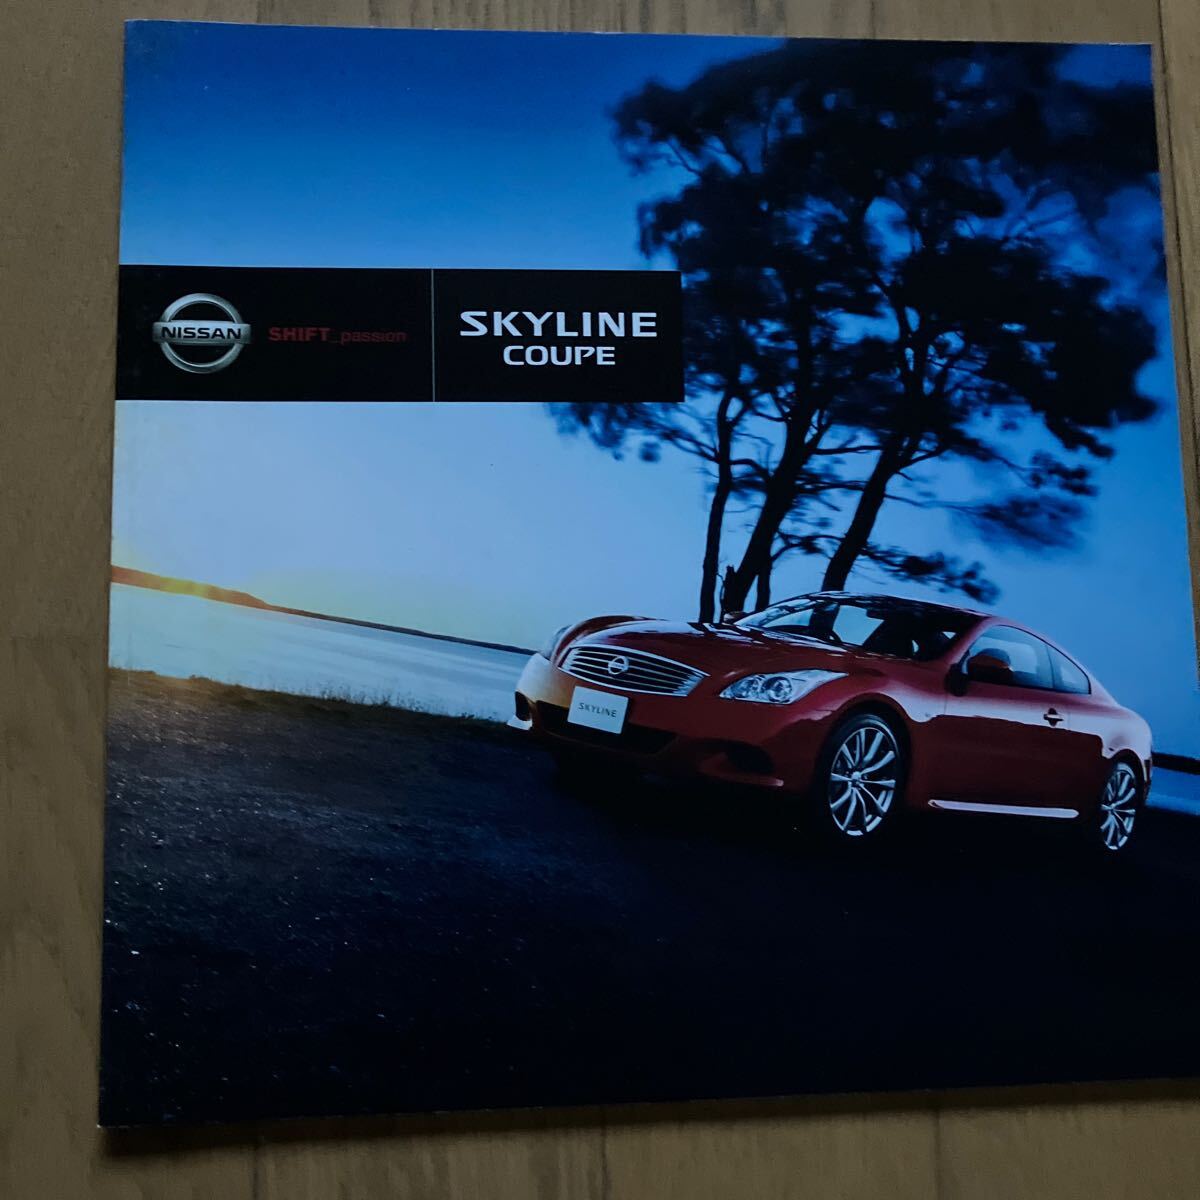  Nissan Skyline кроссовер Skyline купе каталог комплект дополнительный каталог запчастей имеется 2006 год 2009 год 2007 год подлинная вещь 